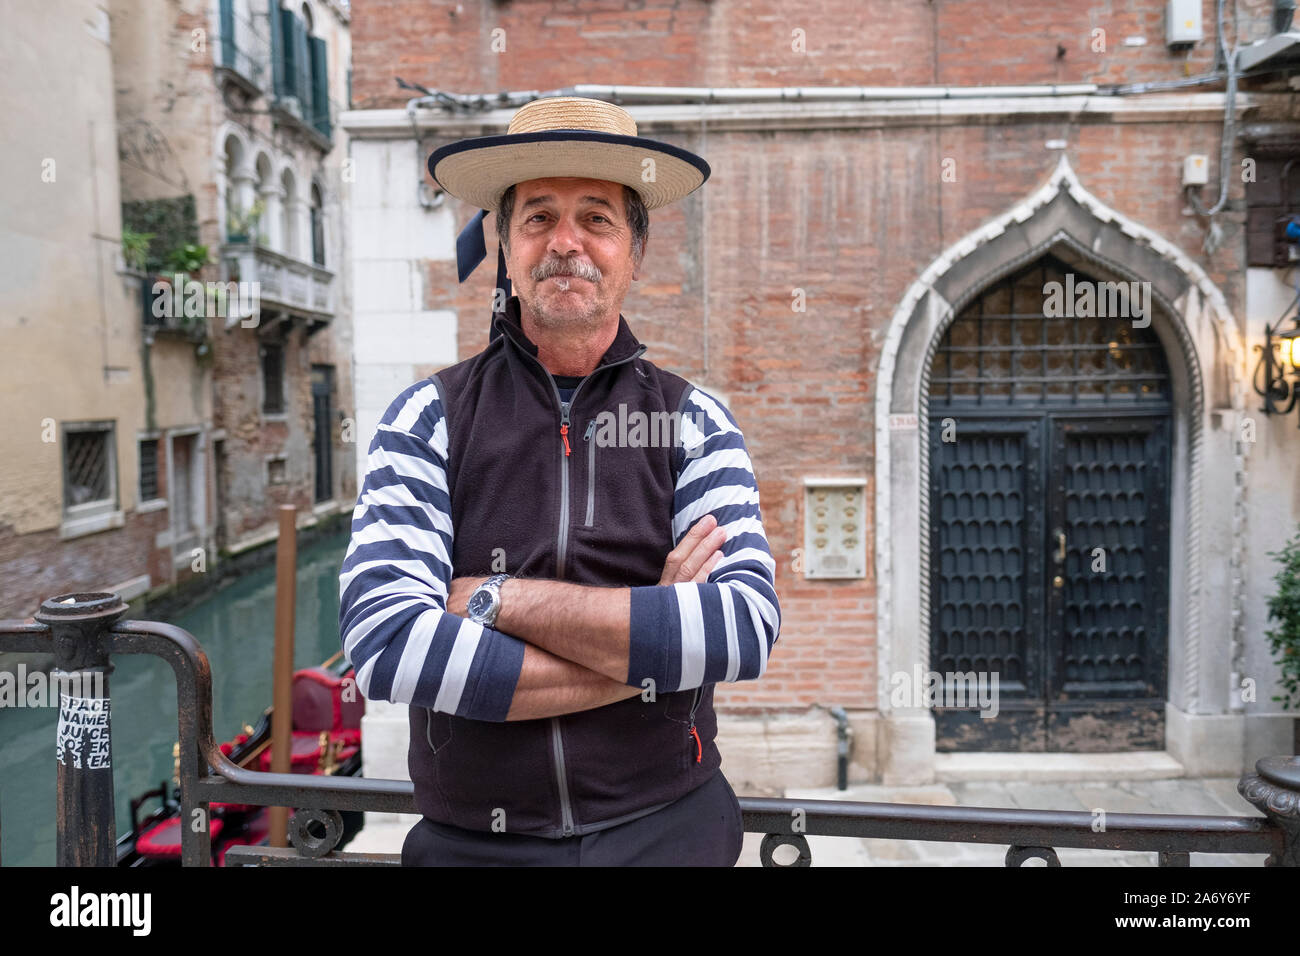 Poste ritratto di un gondoliere su una strada posteriore a Venezia, Italia. Foto Stock